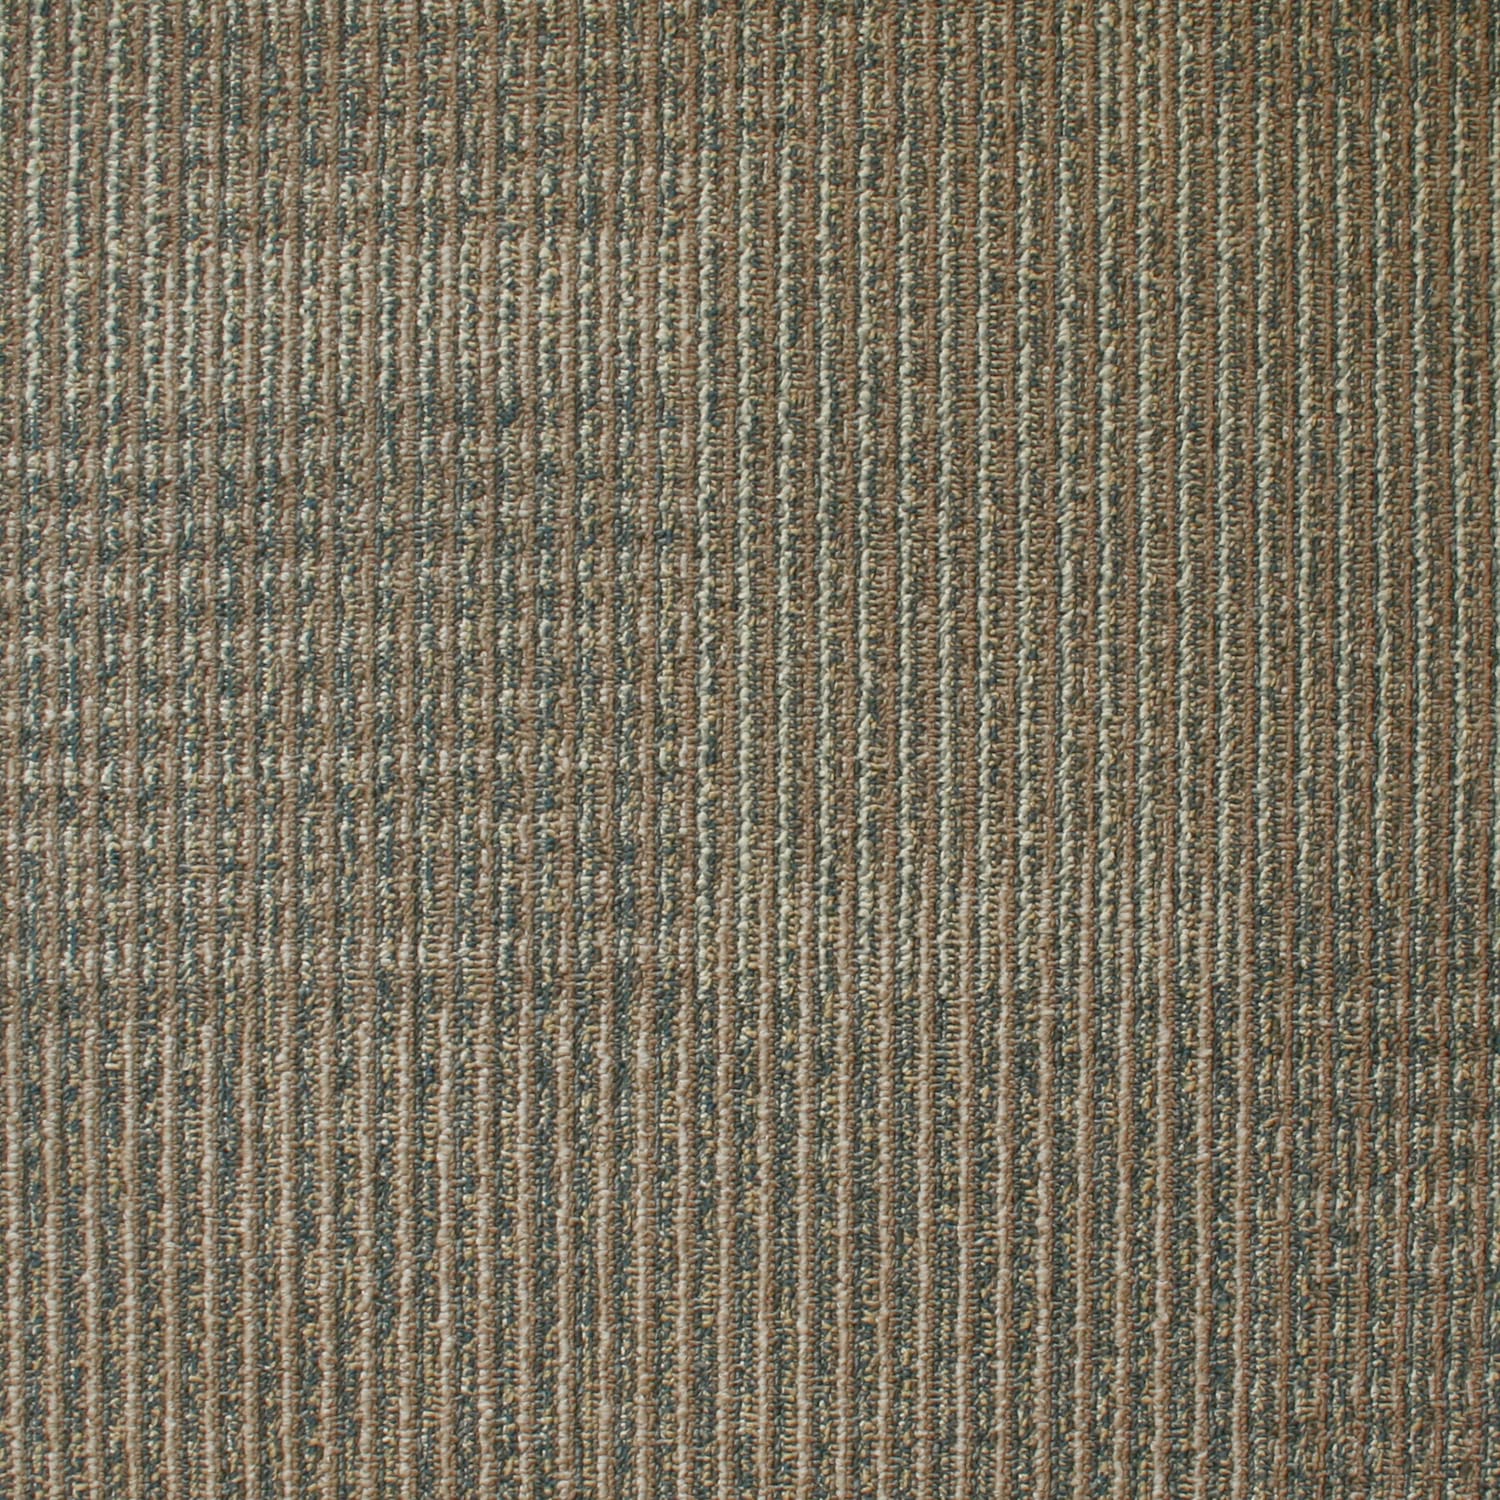 Kraus 03 Biscuit Rhone 19 7 X Eurobac Modular Carpet Tile